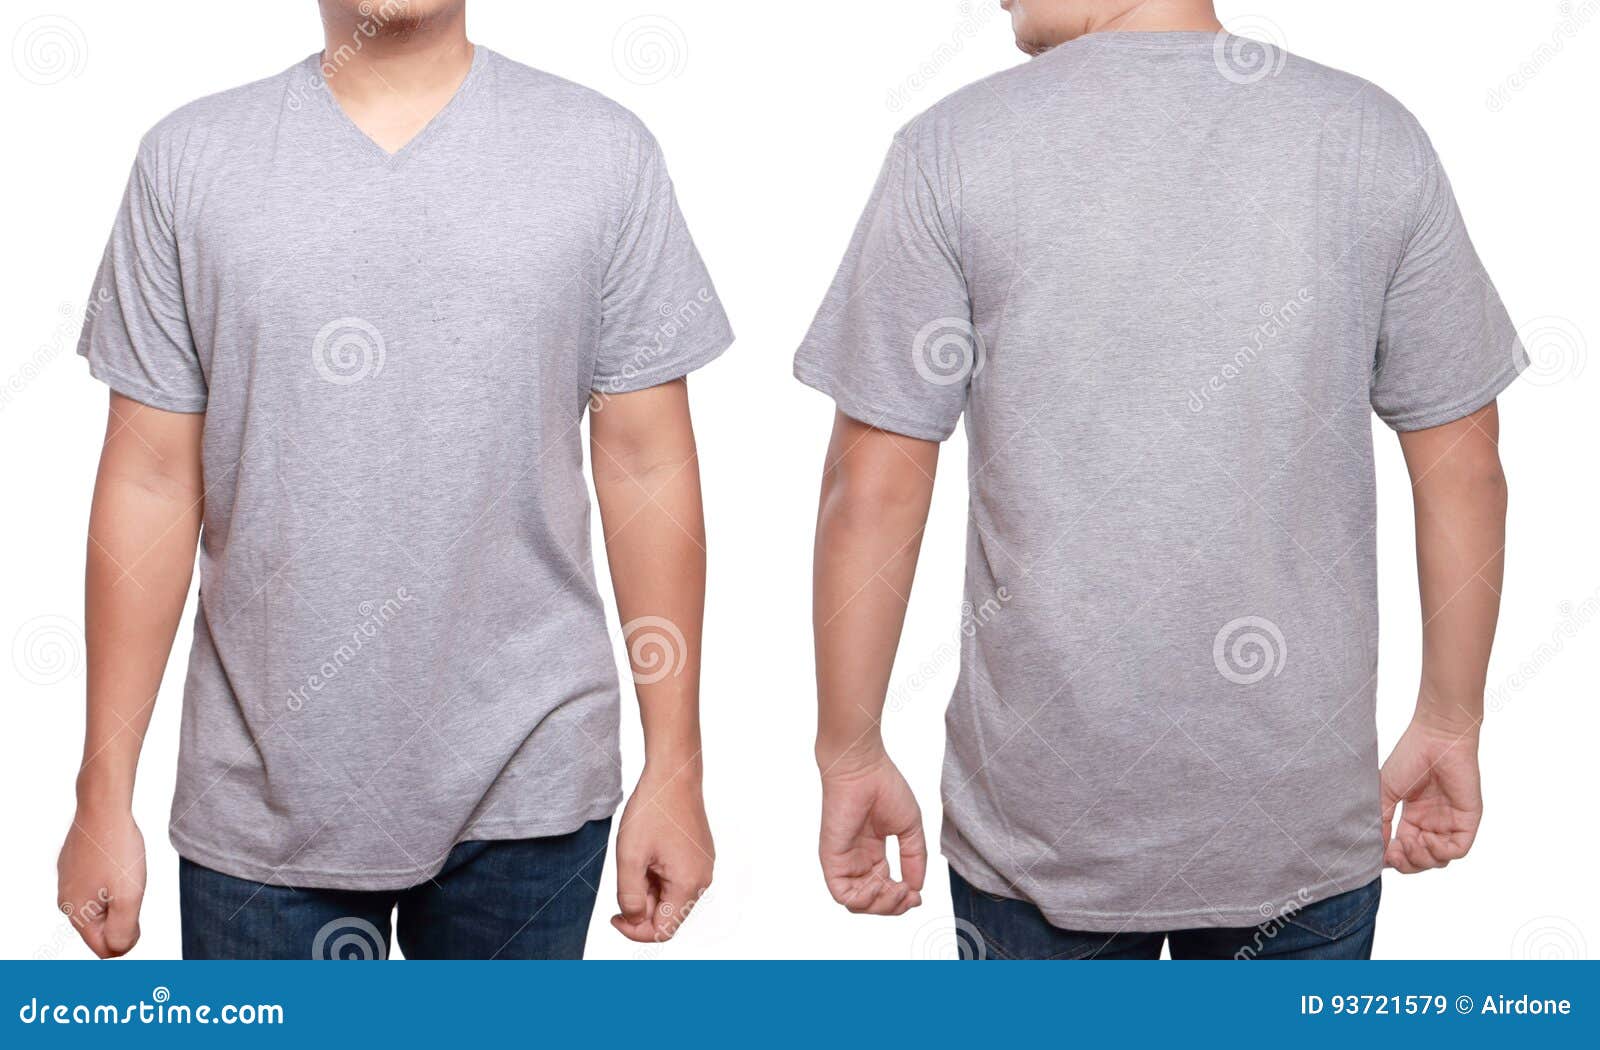 Download Misty Grey V-Neck Shirt Design Template Stock Image ...